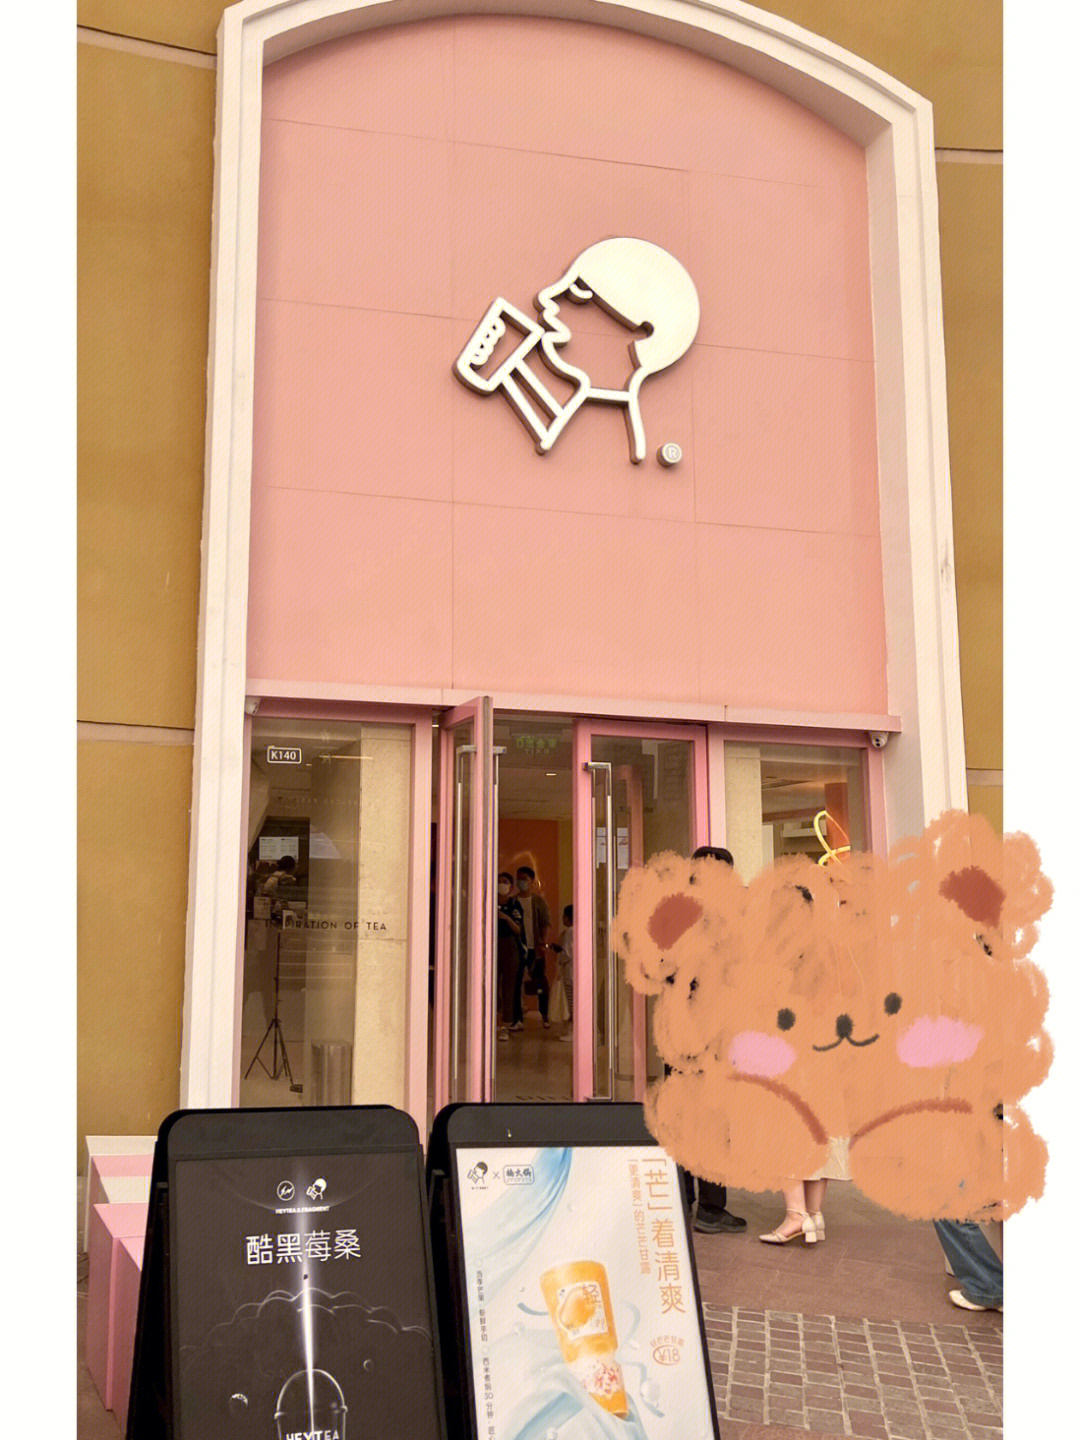 北京首家粉色喜茶店～感觉很可爱97感觉置身梦幻的卡通世界,粉色控